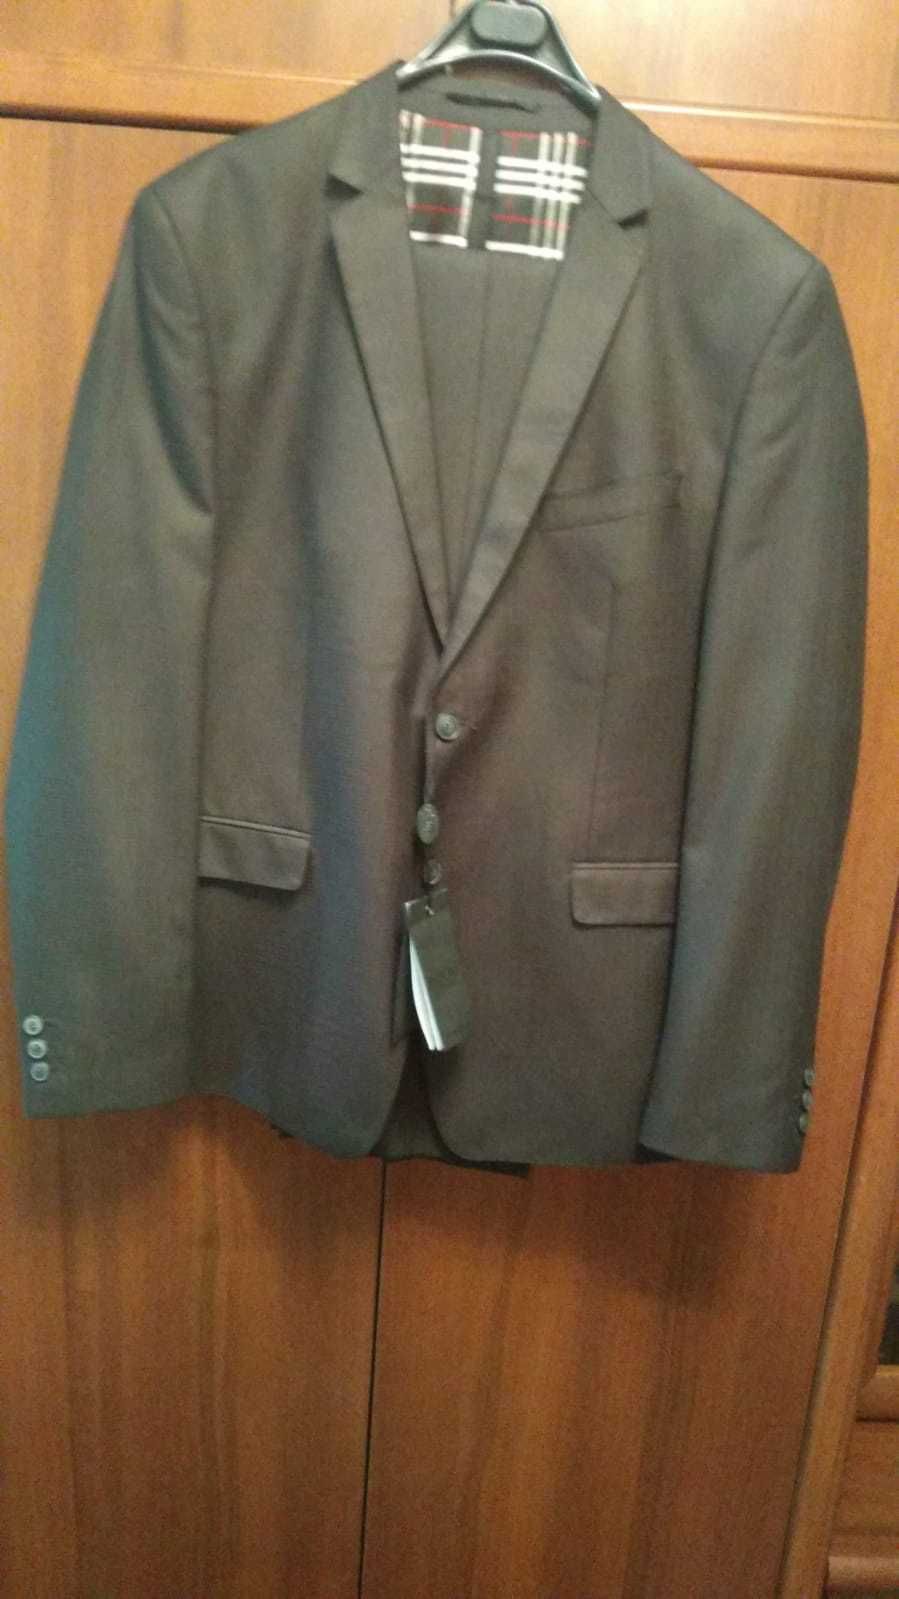 Продам костюм мужской новый, размер 52-54, пиджак и брюки. 15 000 тнг.